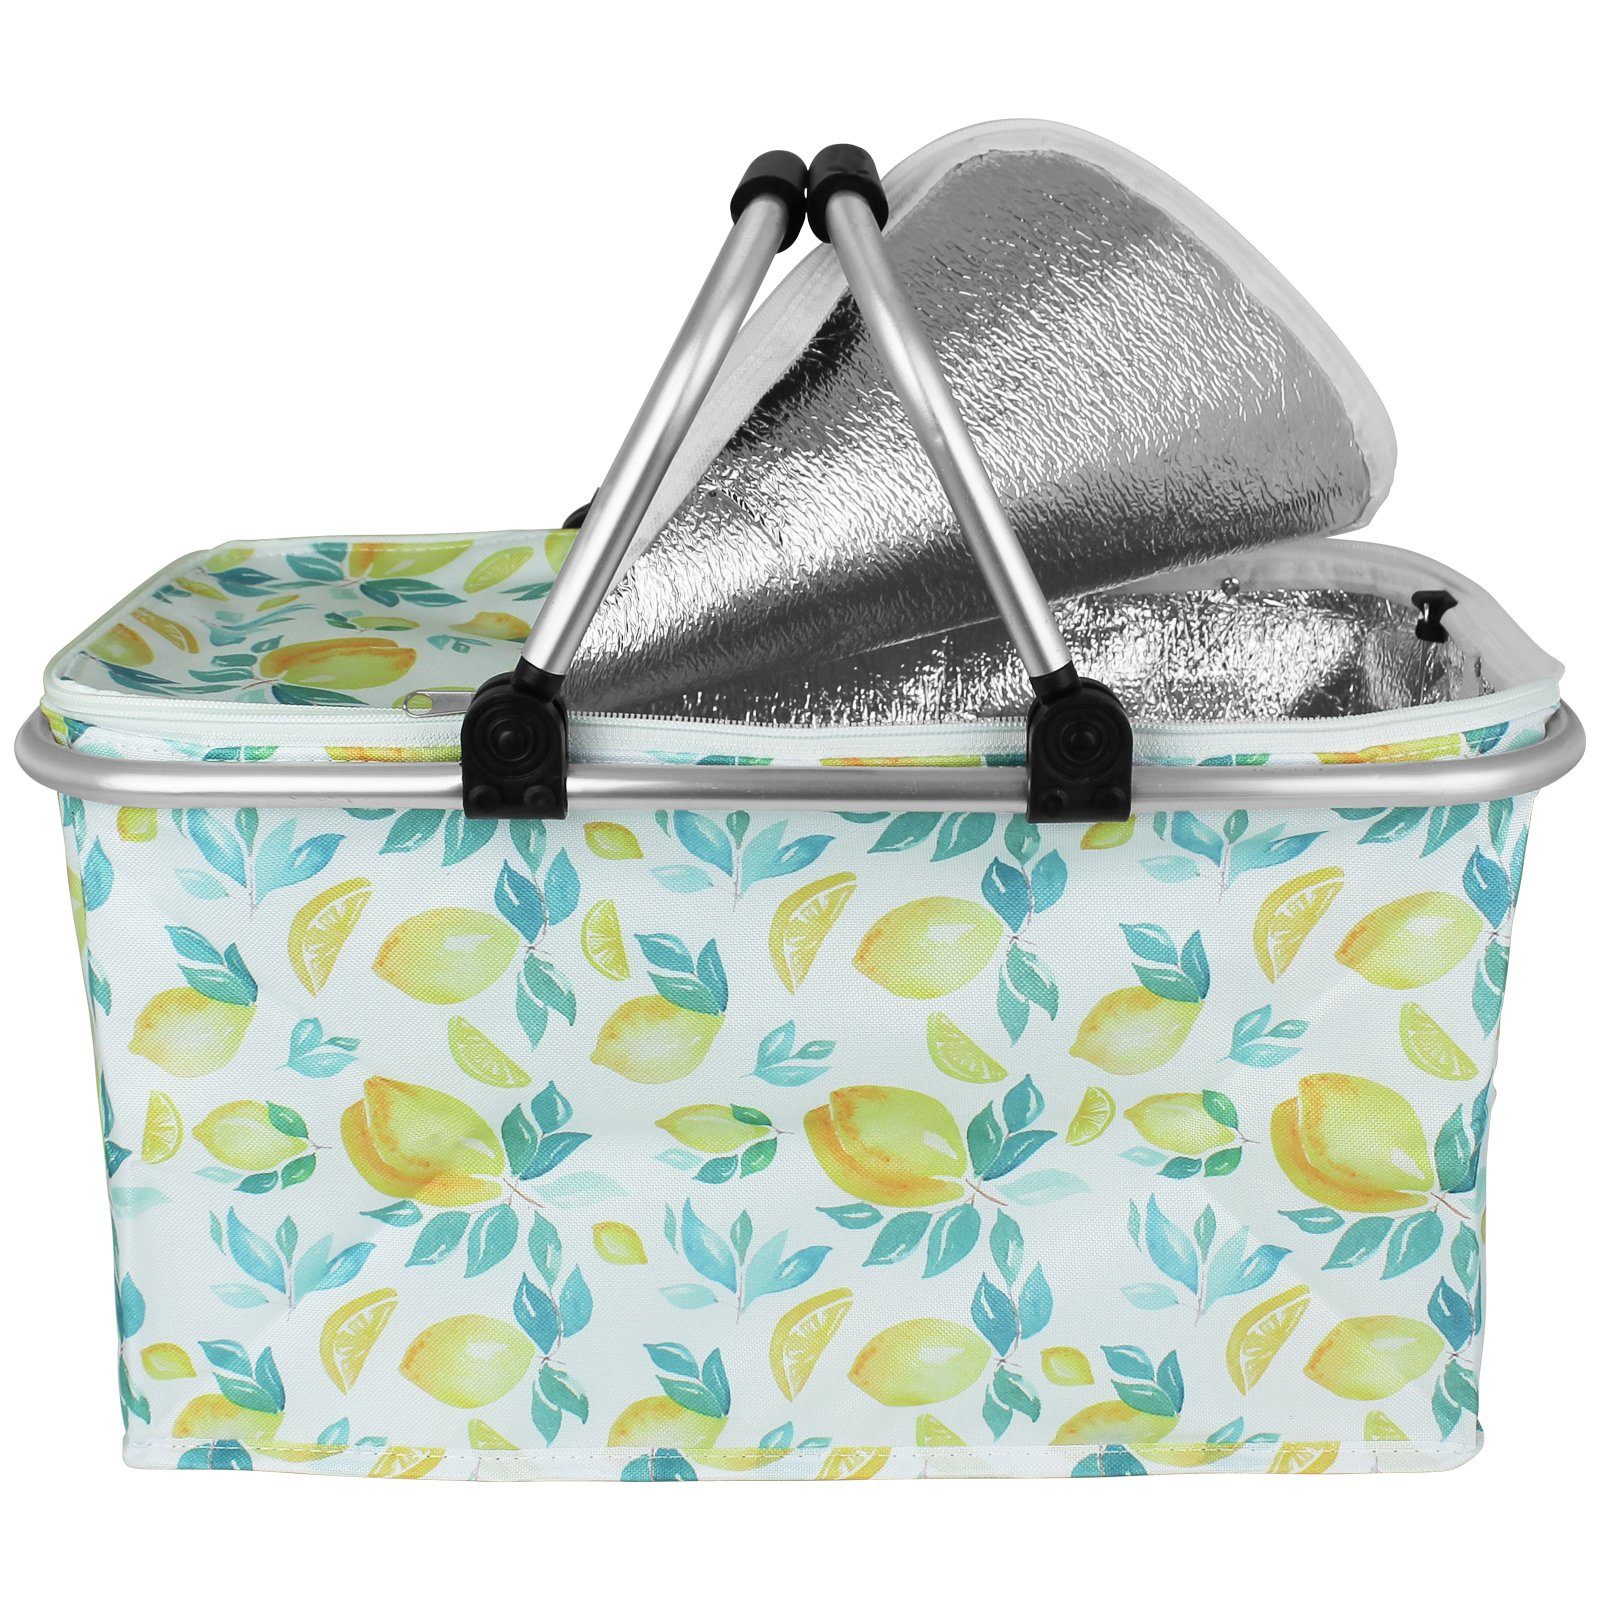 Koopman Kühltasche Einkaufskorb mit Farbwahl, Kühlbox Thermobox Coolbox Strandkorb Kühlelement Einkaufstasche Zitrone